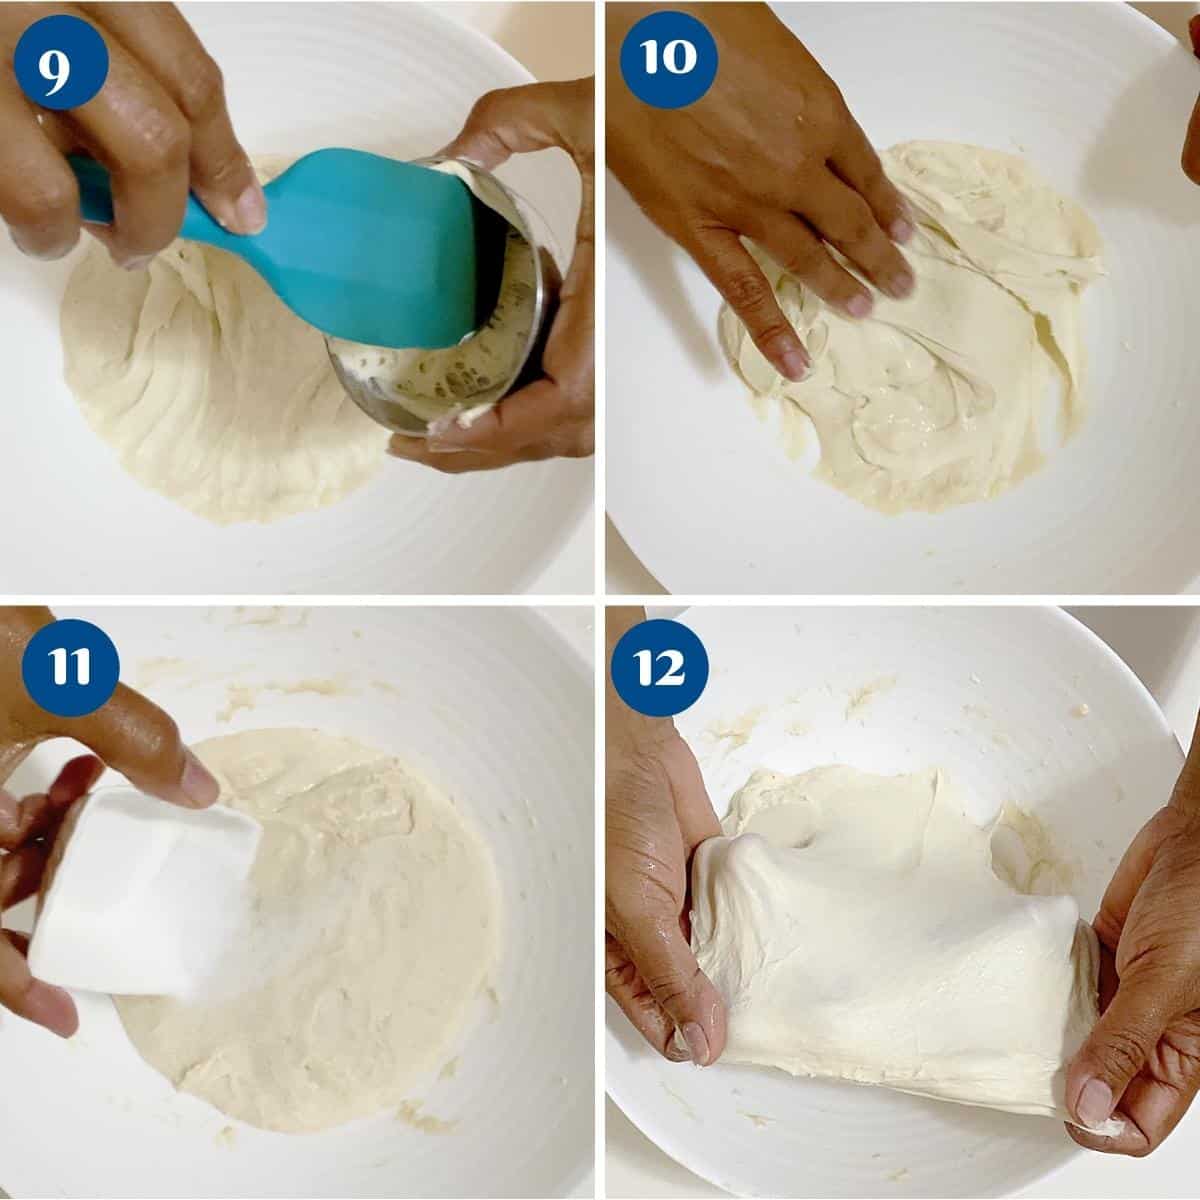 Progress pictures making the sourdough dough.